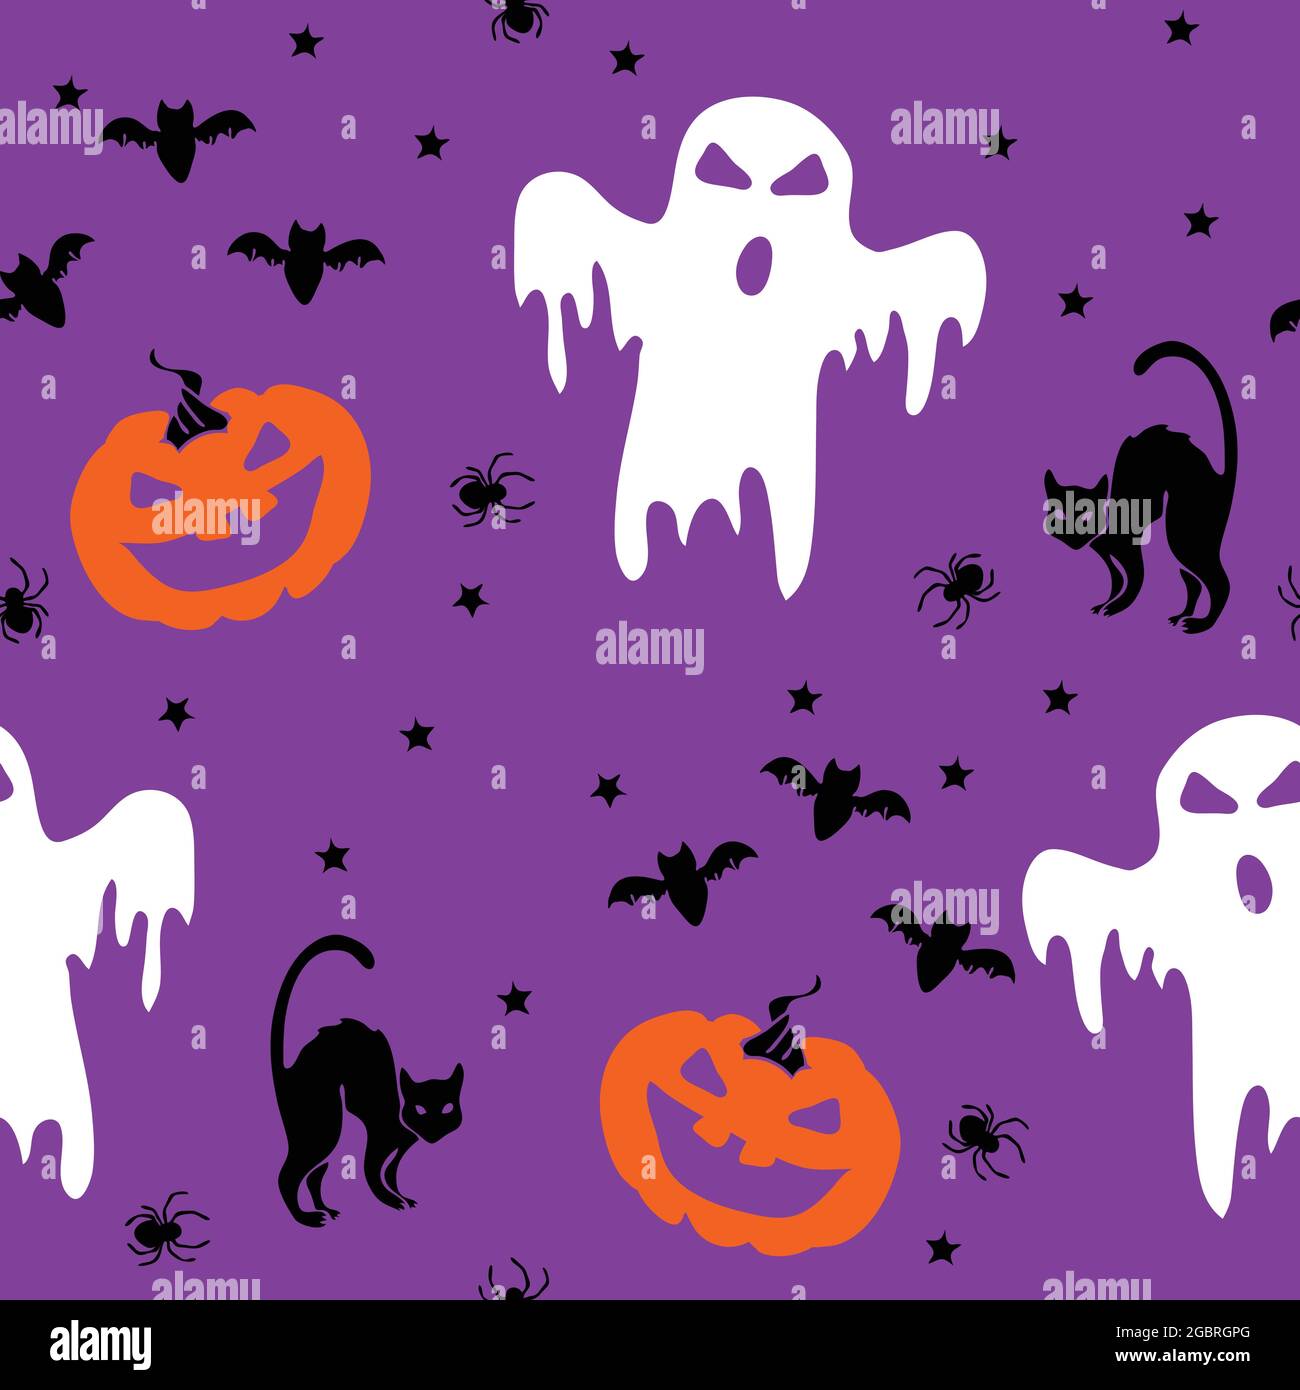 305330 Halloween Wallpaper Images Stock Photos  Vectors  Shutterstock